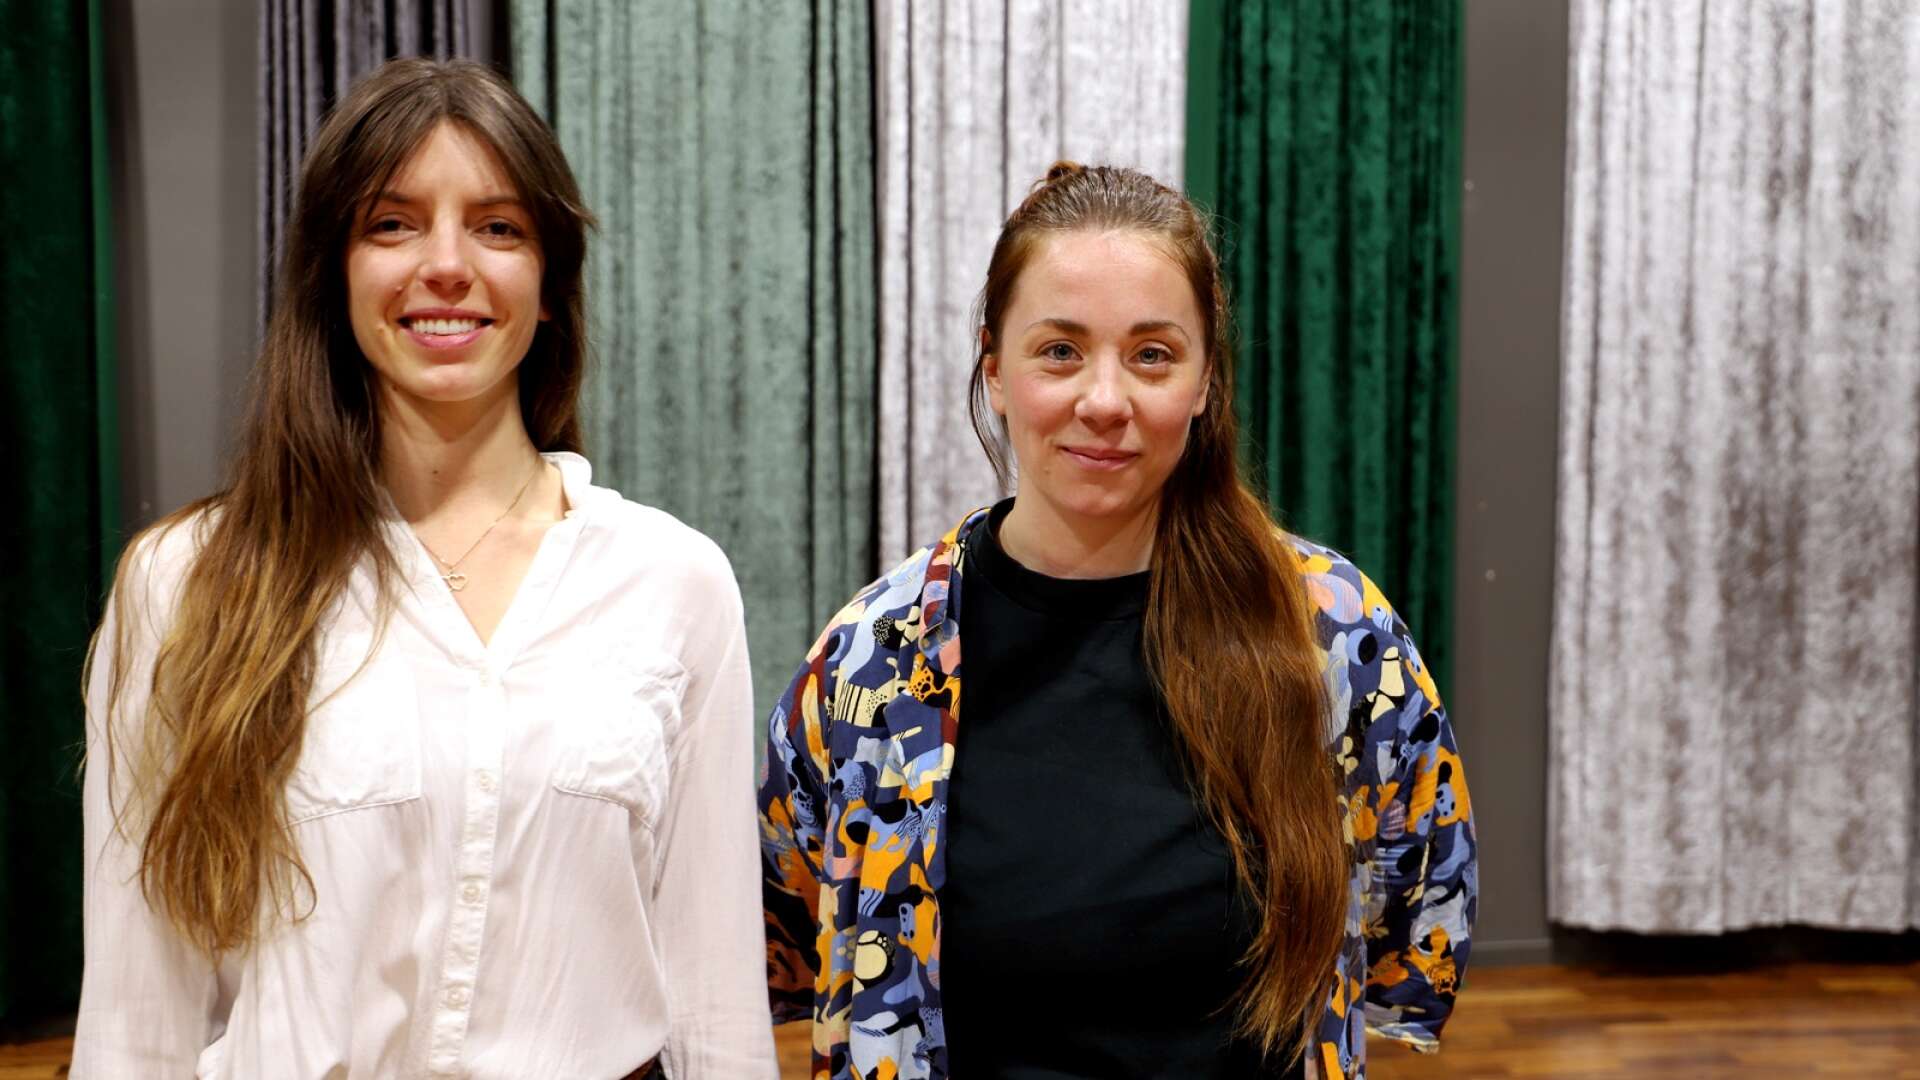 Danskonstnären Linn Eriksson och skådespelaren Isabelle Boström har gjort en förstudie om lokaler för kulturlivet i Karlstad och Värmland. De slår fast att det är brist på lämpliga lokaler för bland annat repetitioner.